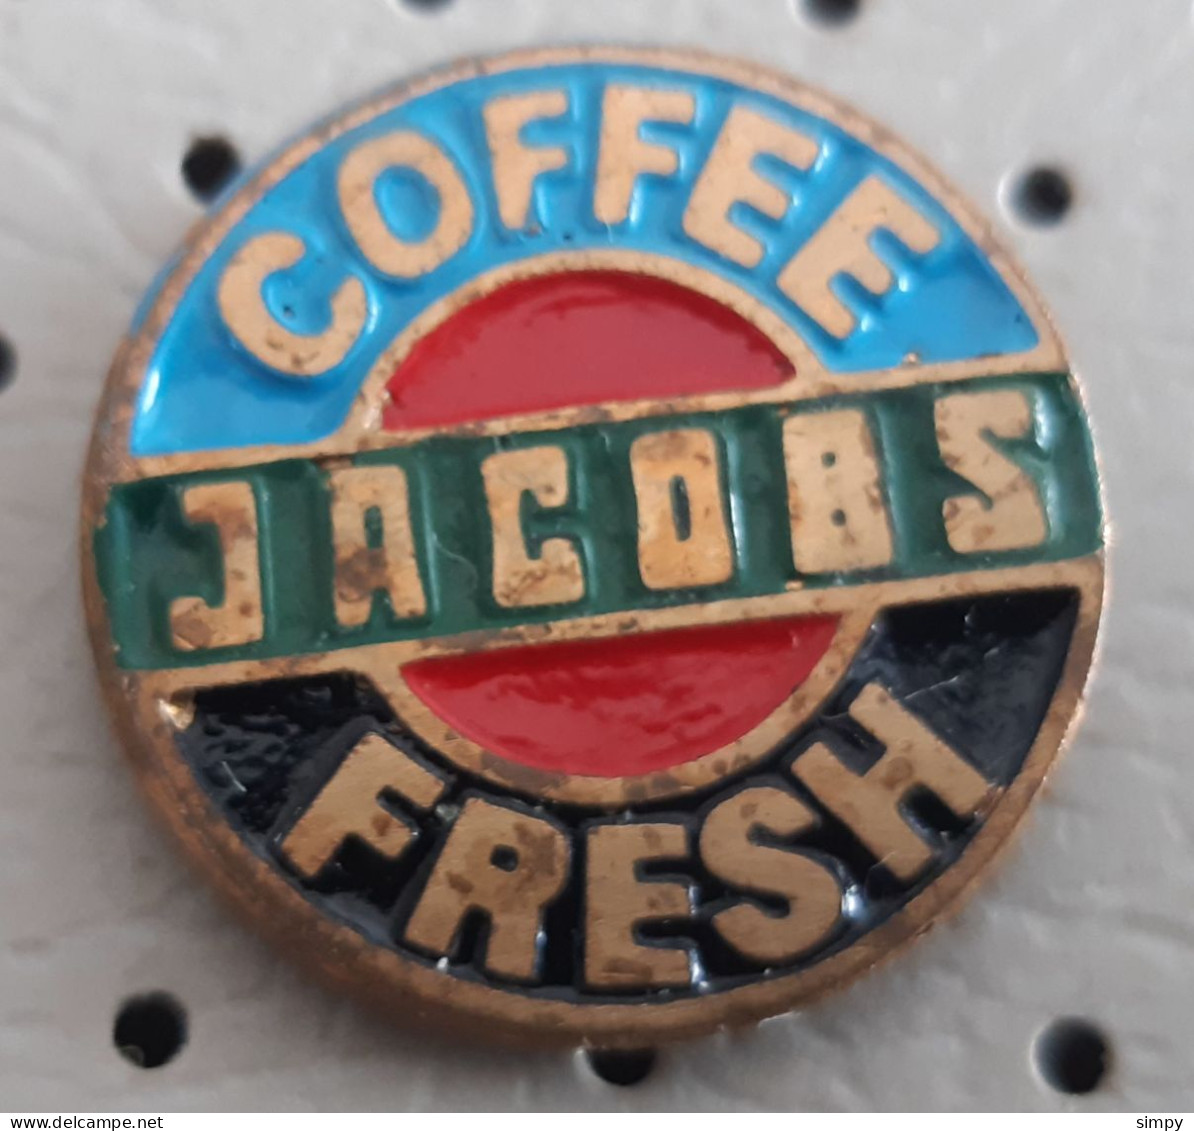 JACOBS Fresh Coffee Cafe Kaffe Caffe  Germany  Pin - Getränke